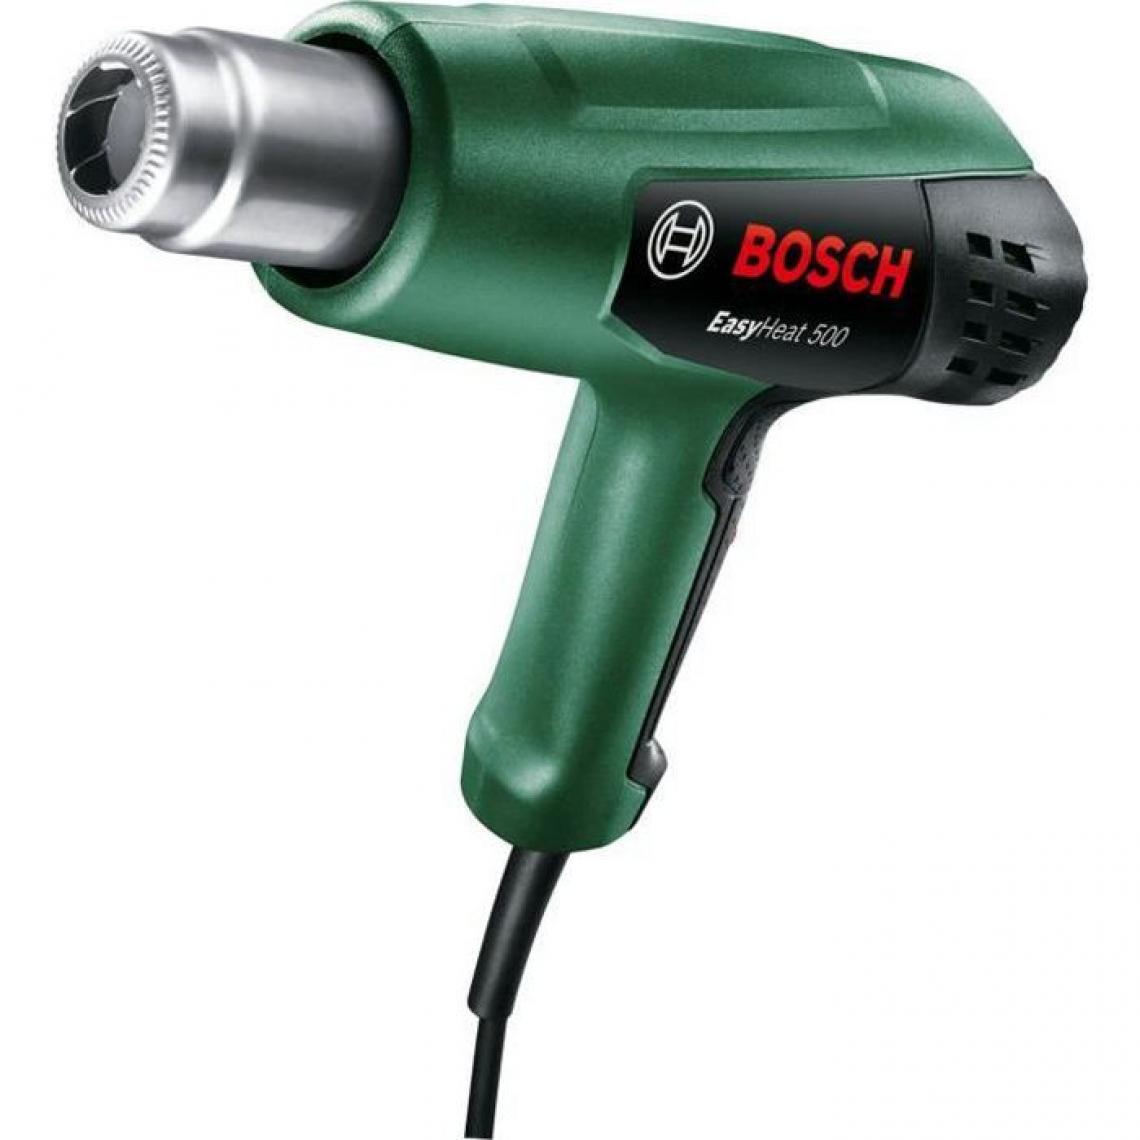 Bosch - Décapeur thermique Bosch - EasyHeat 500 (1600W, débit d'air: 240 / 450 l/min, température: 300/500°C) - Décapeurs thermiques